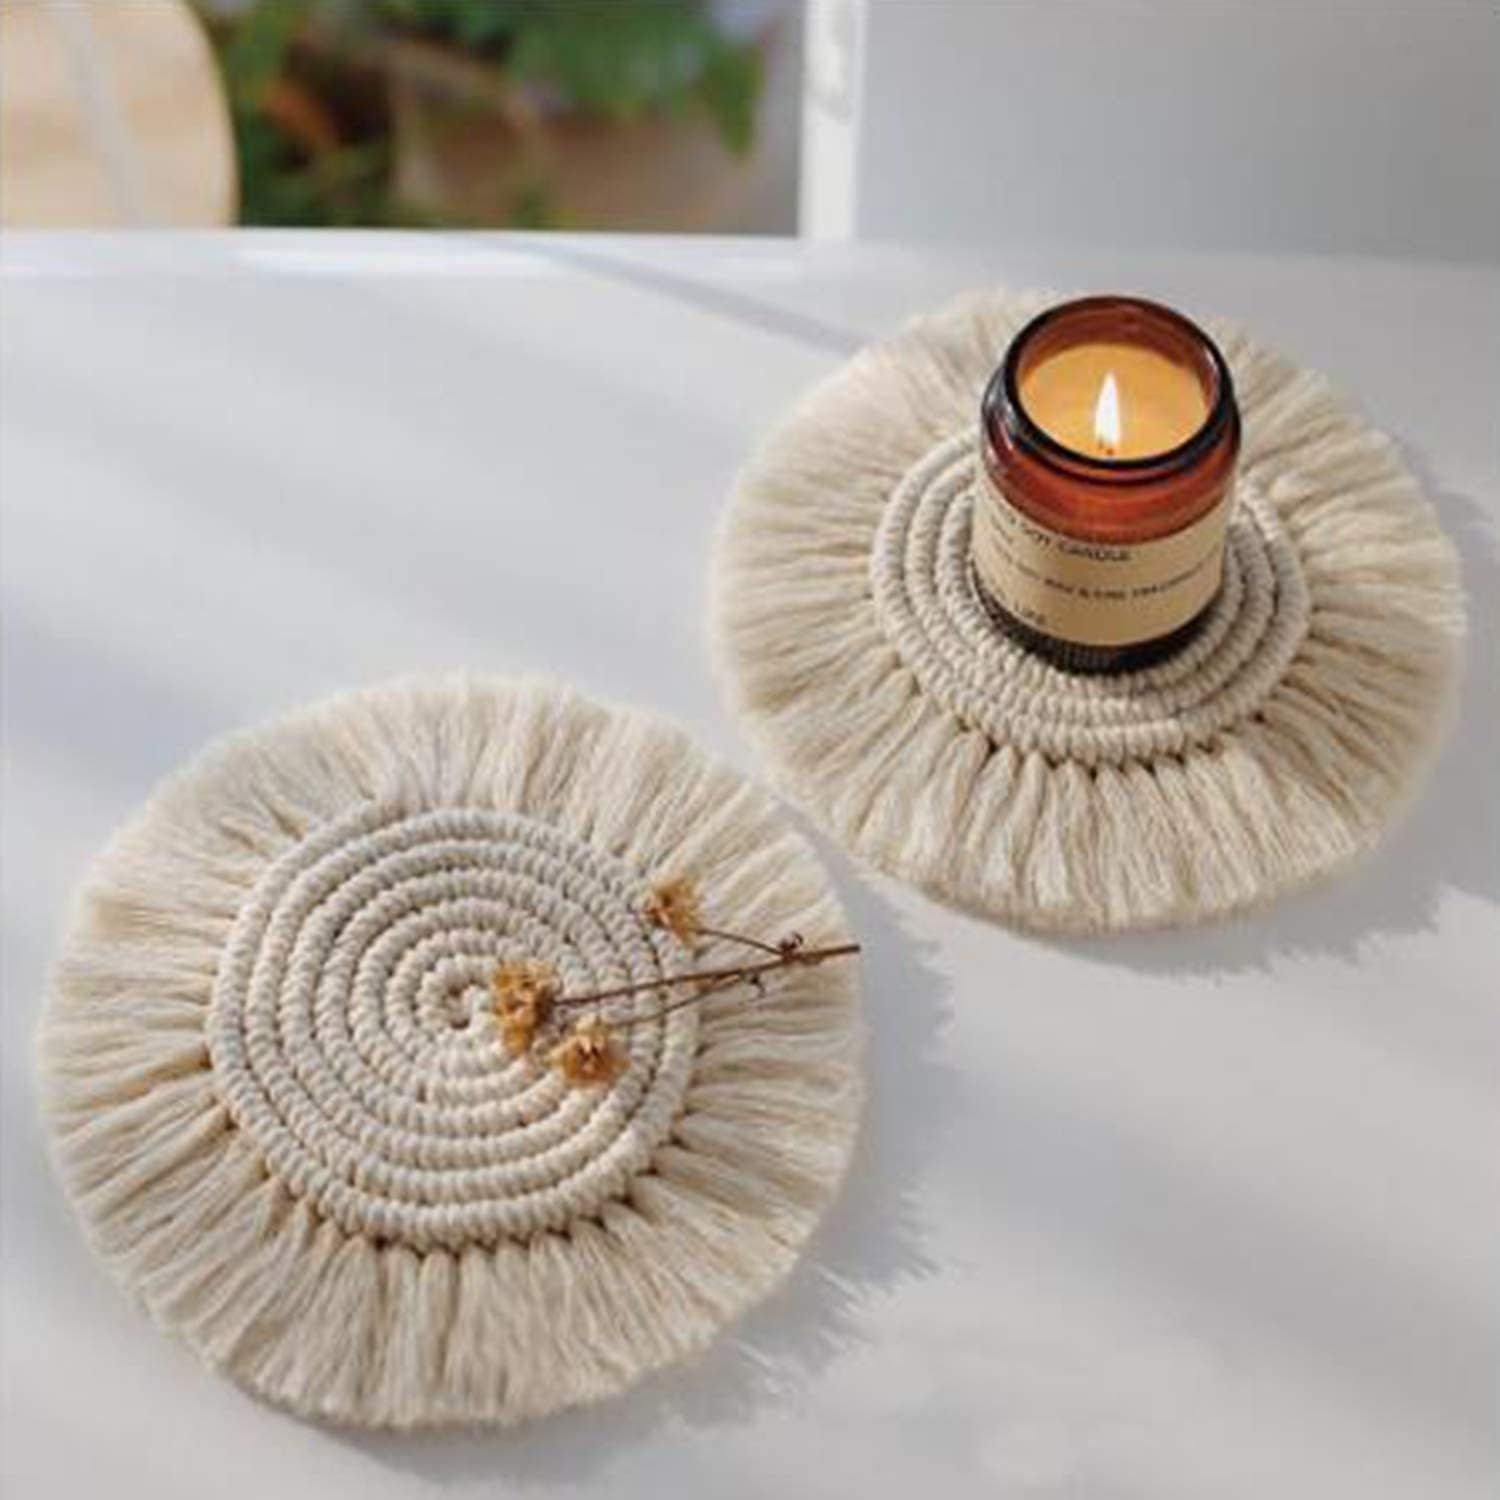 6pcs Handmade Macrame Coasters Set, Boho Woven Coaster, Cotton Rope Braided Placemats with Tassel... | Amazon (UK)